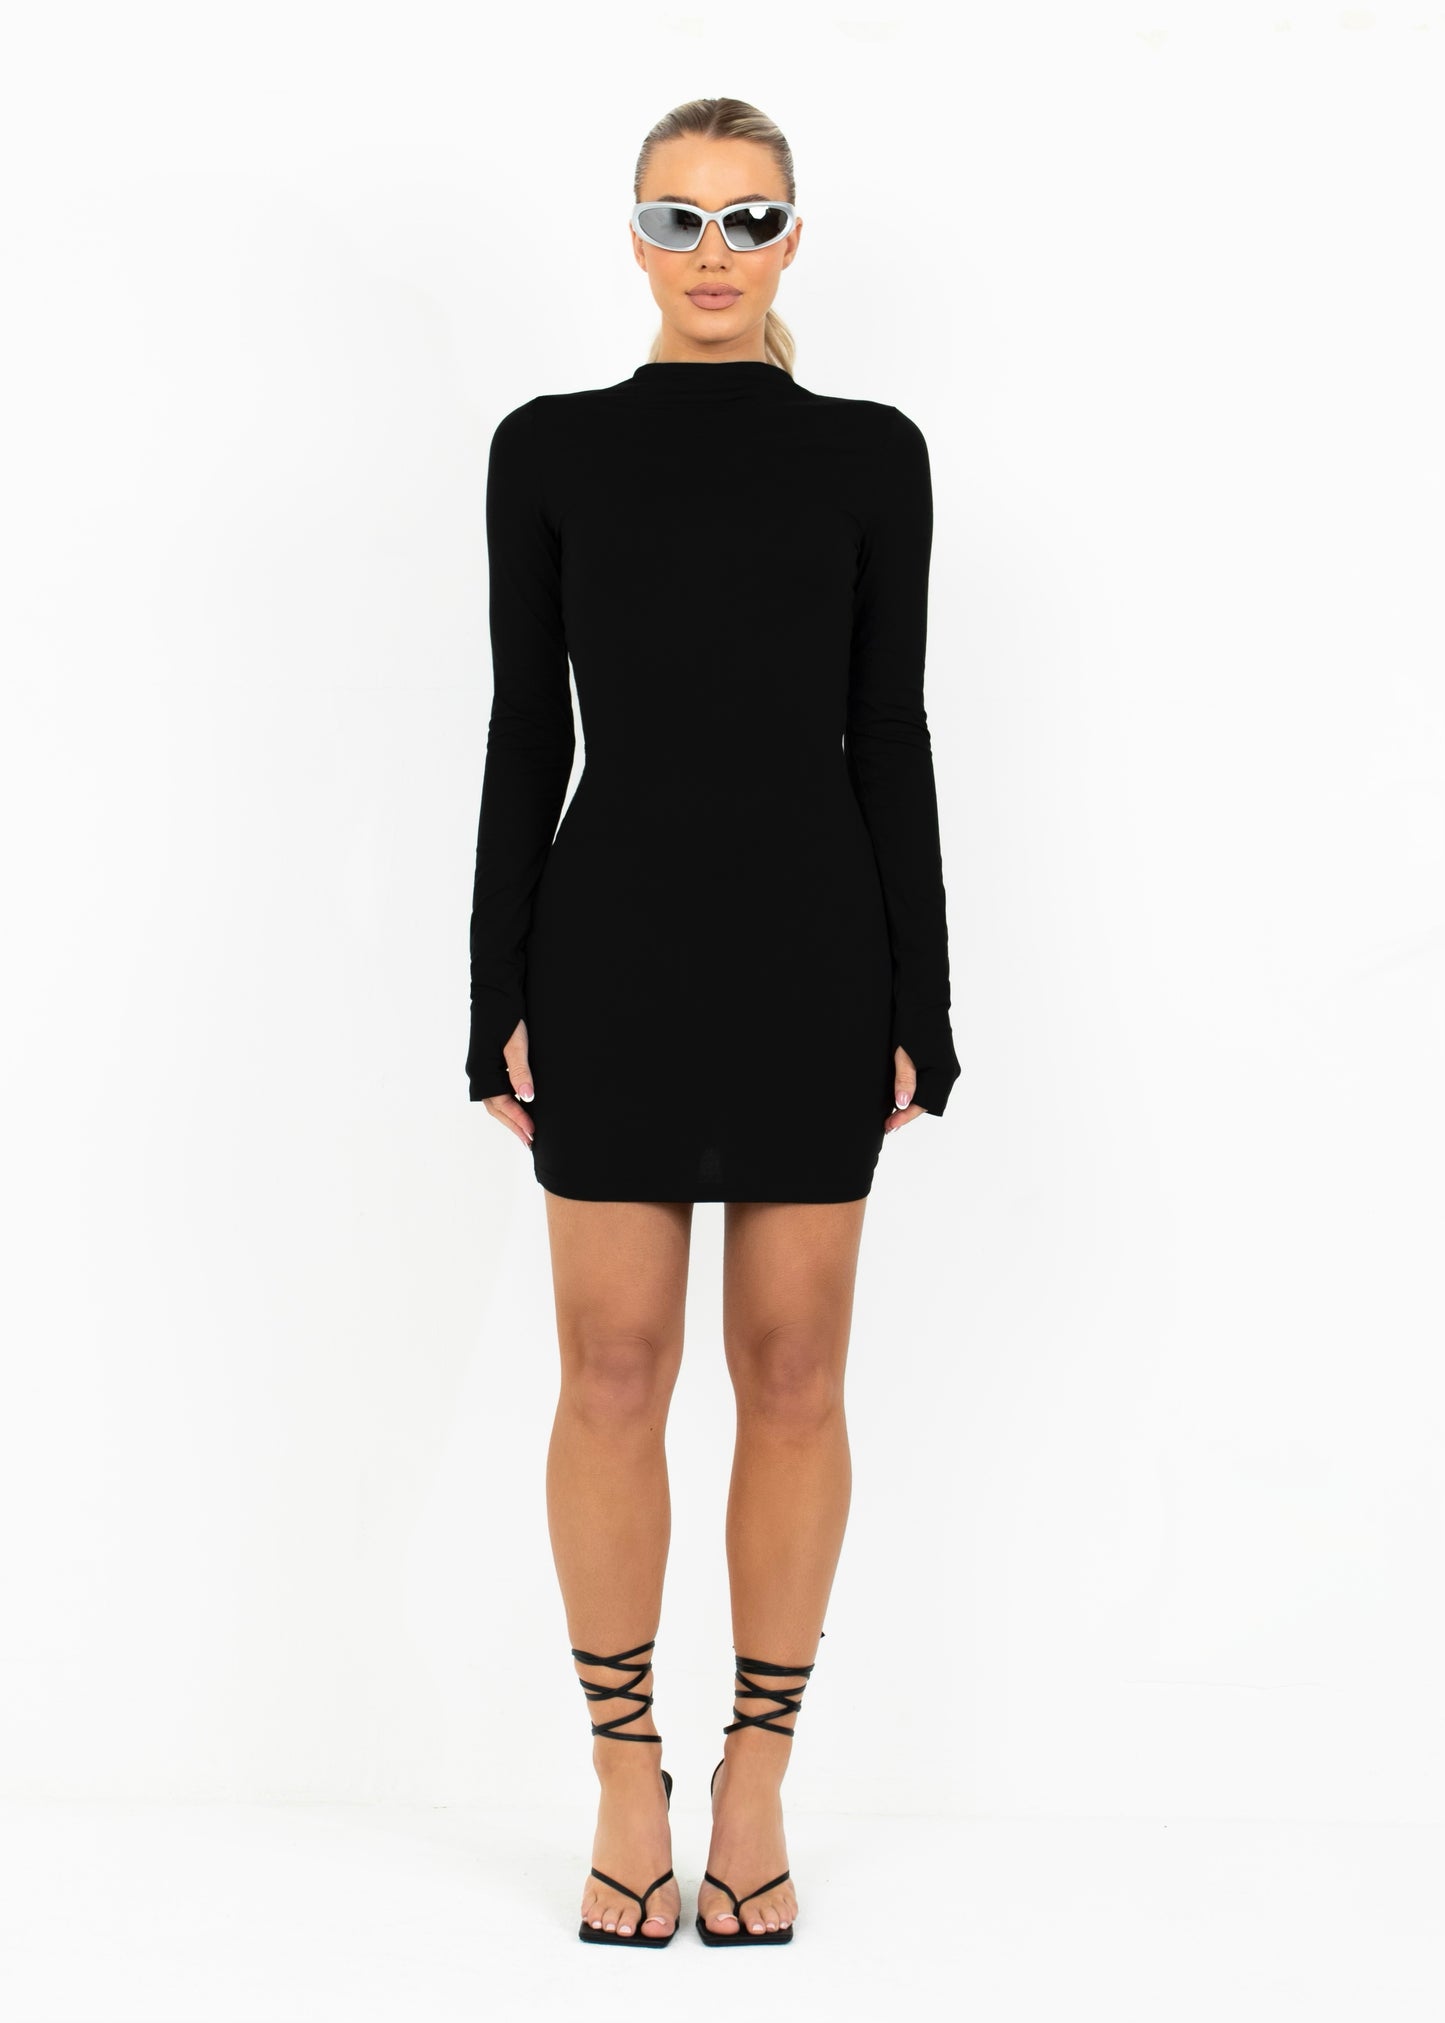 LEIA - Black Bodycon Mini Dress